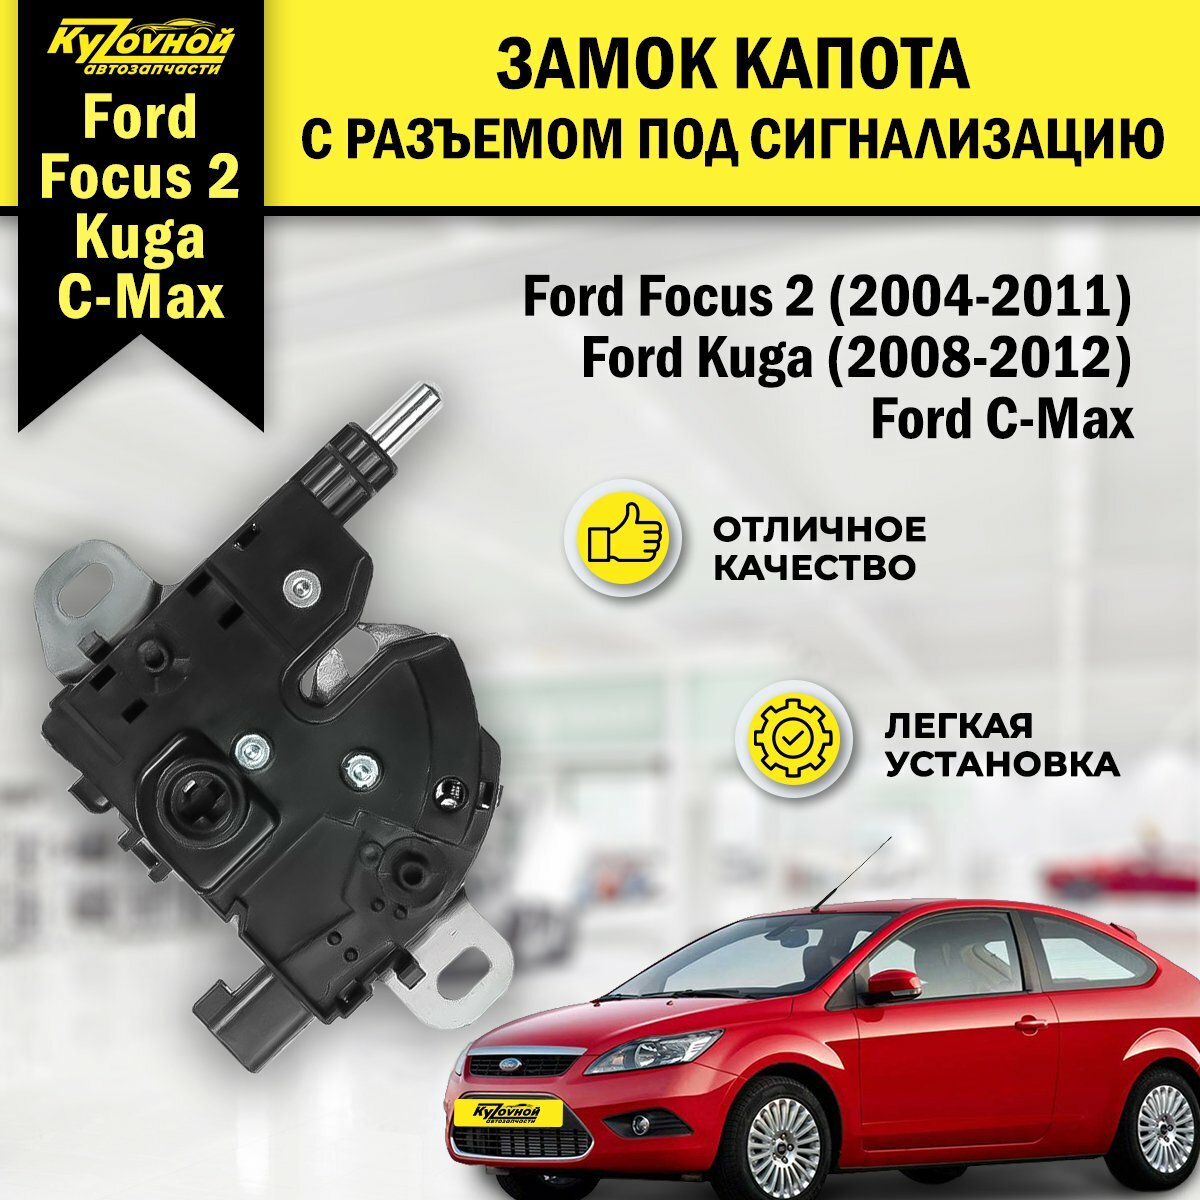 Замок капота Ford Focus 2 (2004-2011) Ford Kuga (2008-2012) с разъемом под сигнализацию